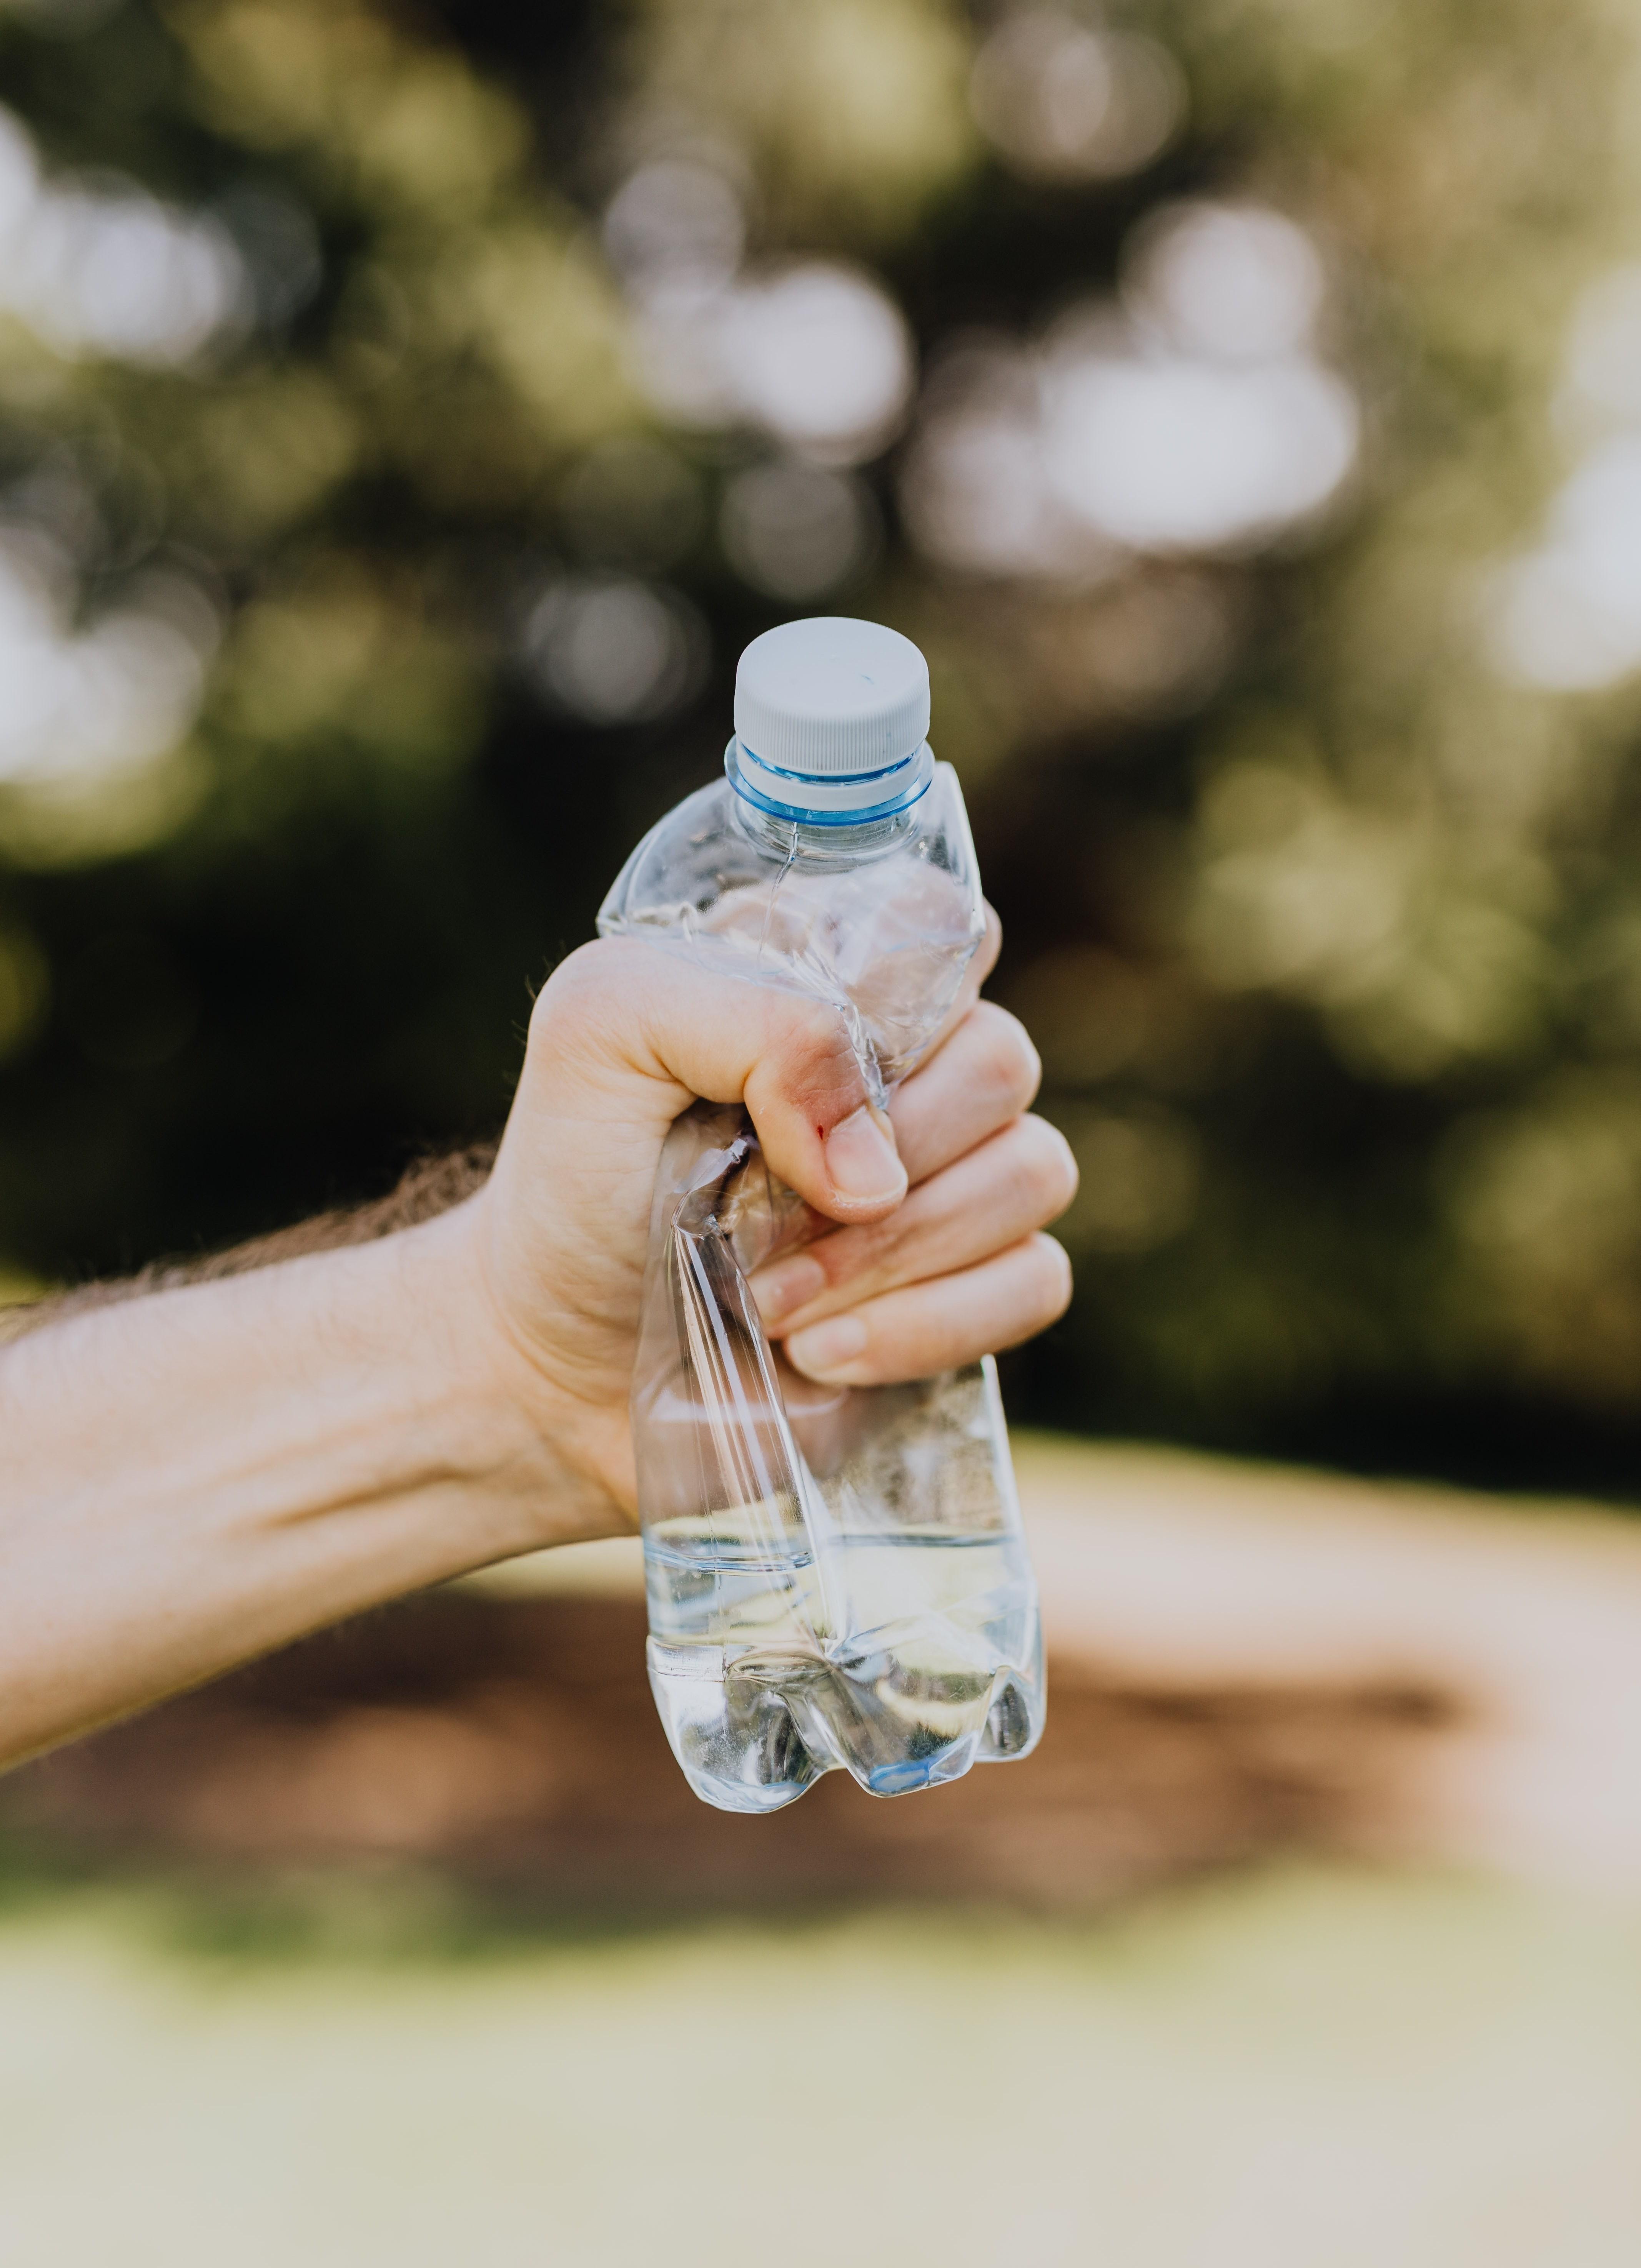 Brita amplía su gama de botellas de agua filtrada - Noticias de Electro en  Alimarket